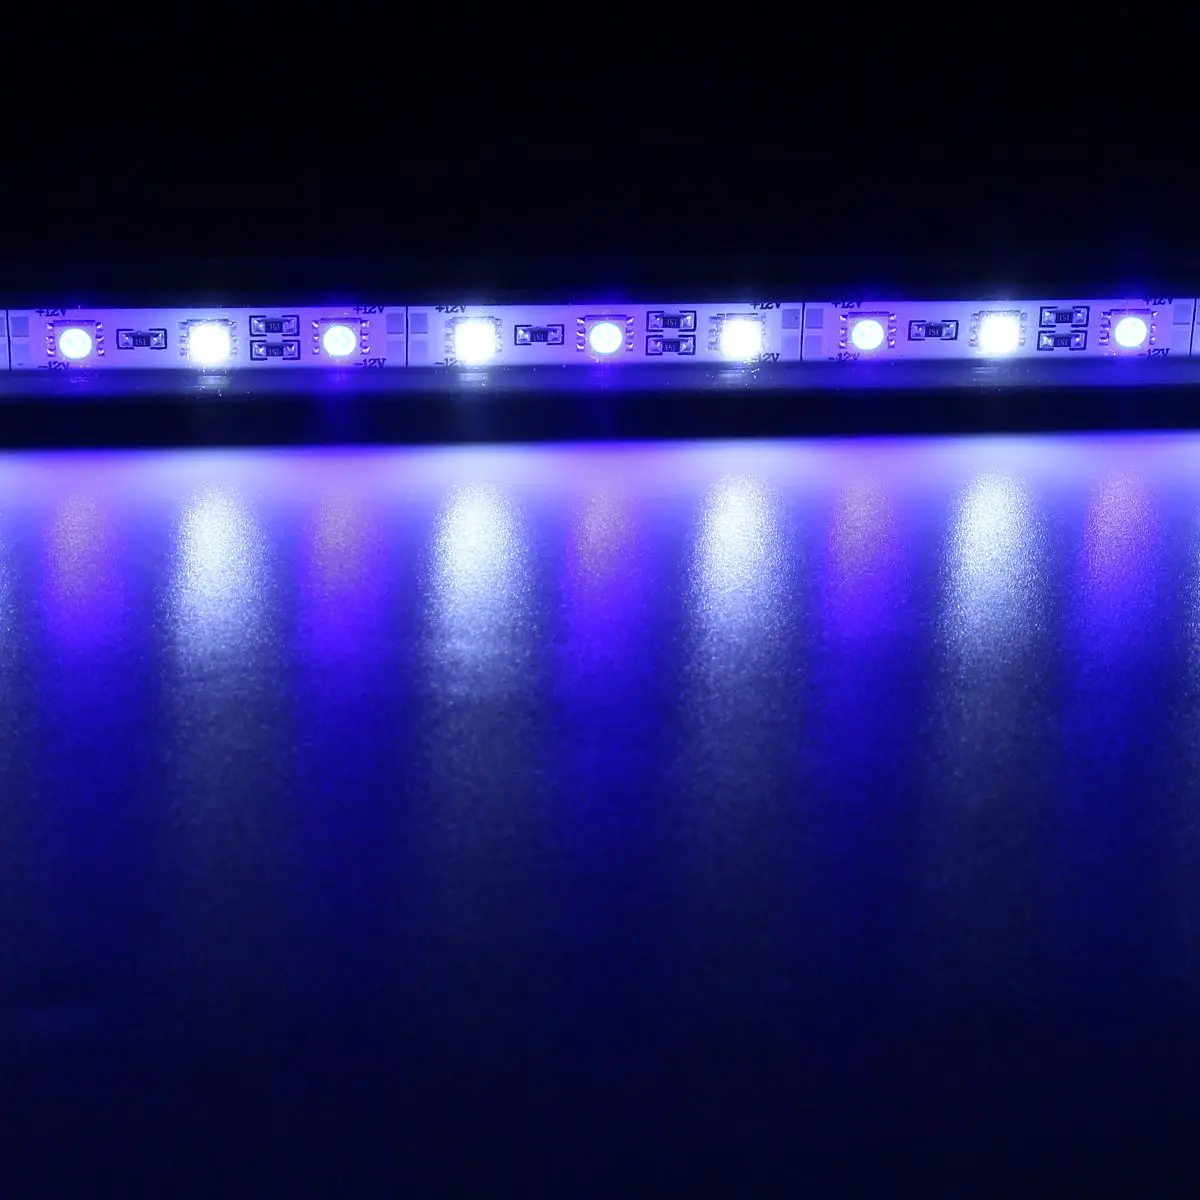 62 см водонепроницаемый Светодиодный светильник для аквариума s светильник для аквариума синий/белый Погружной подводный светильник с зажимом для аквариума EU/US/UK/AU - Испускаемый цвет: Blue and white light